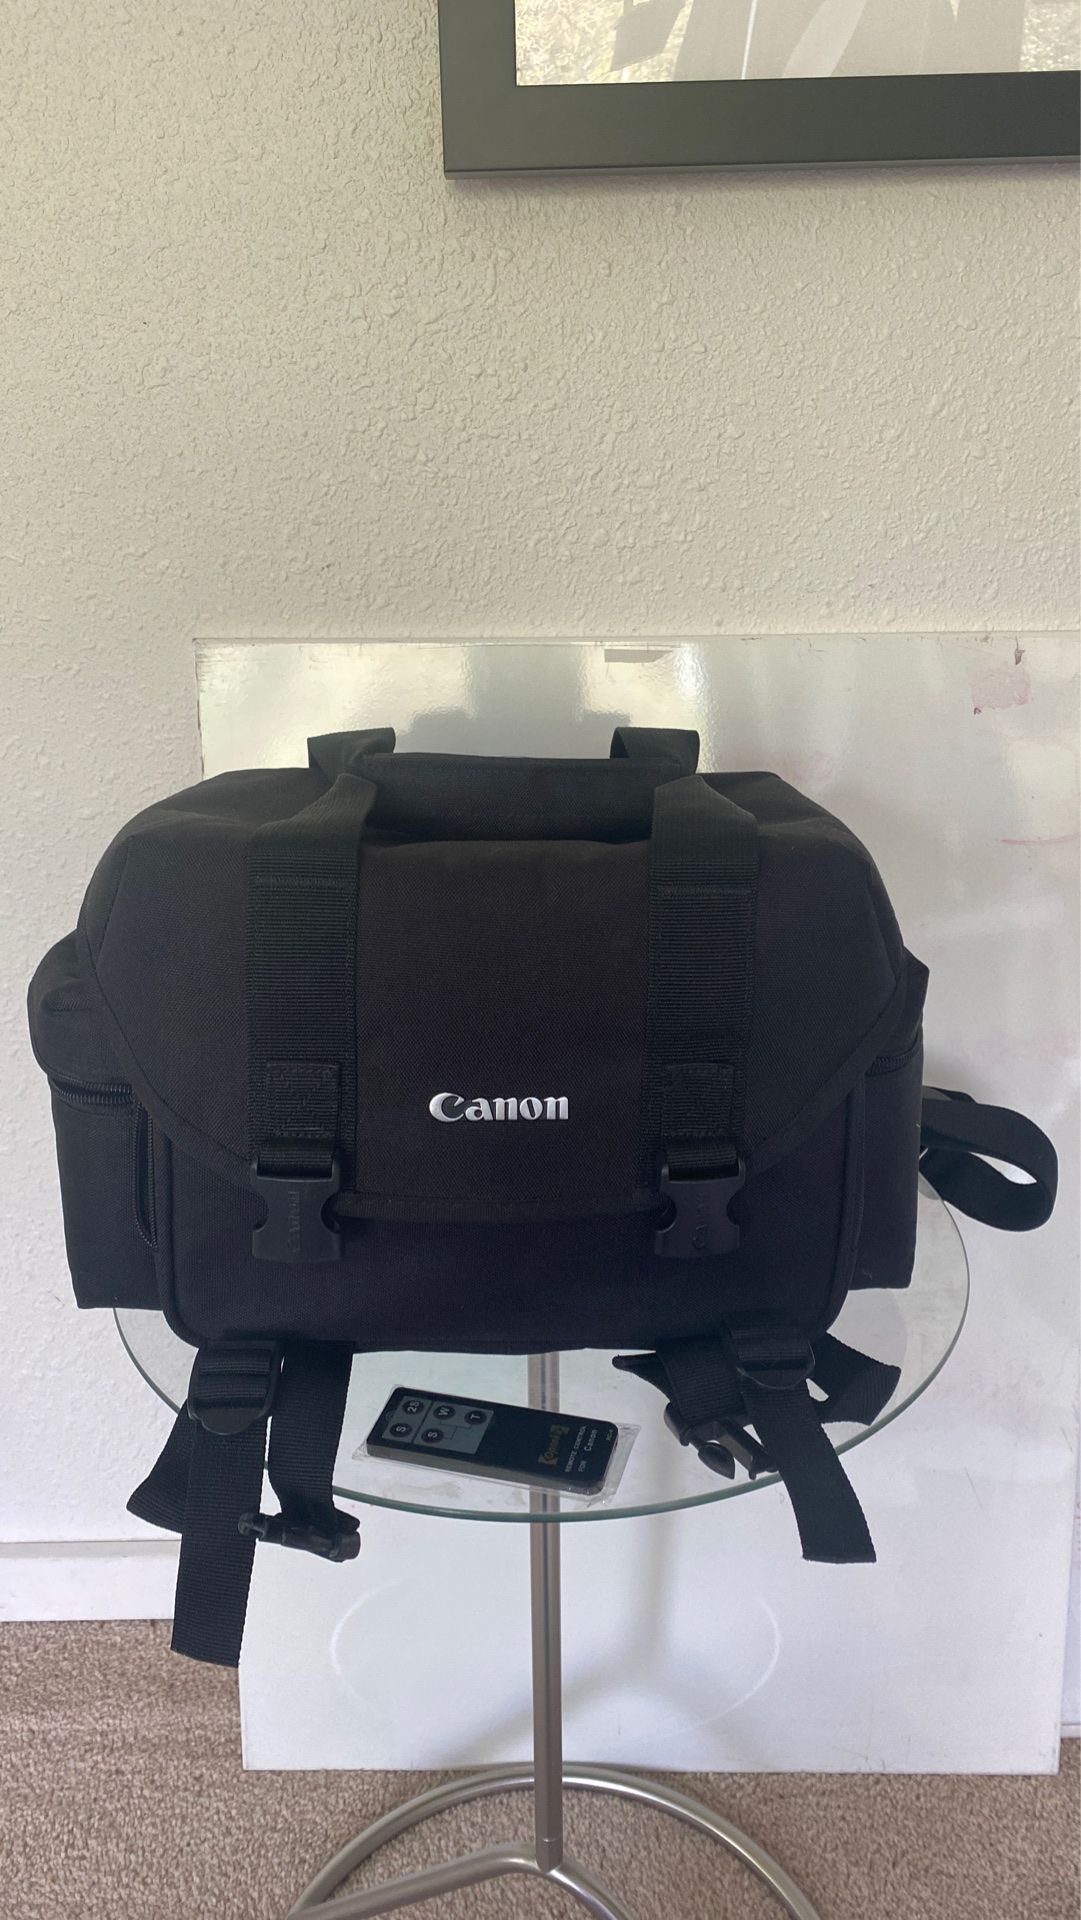 Canon DSLR bag and new Canon remote